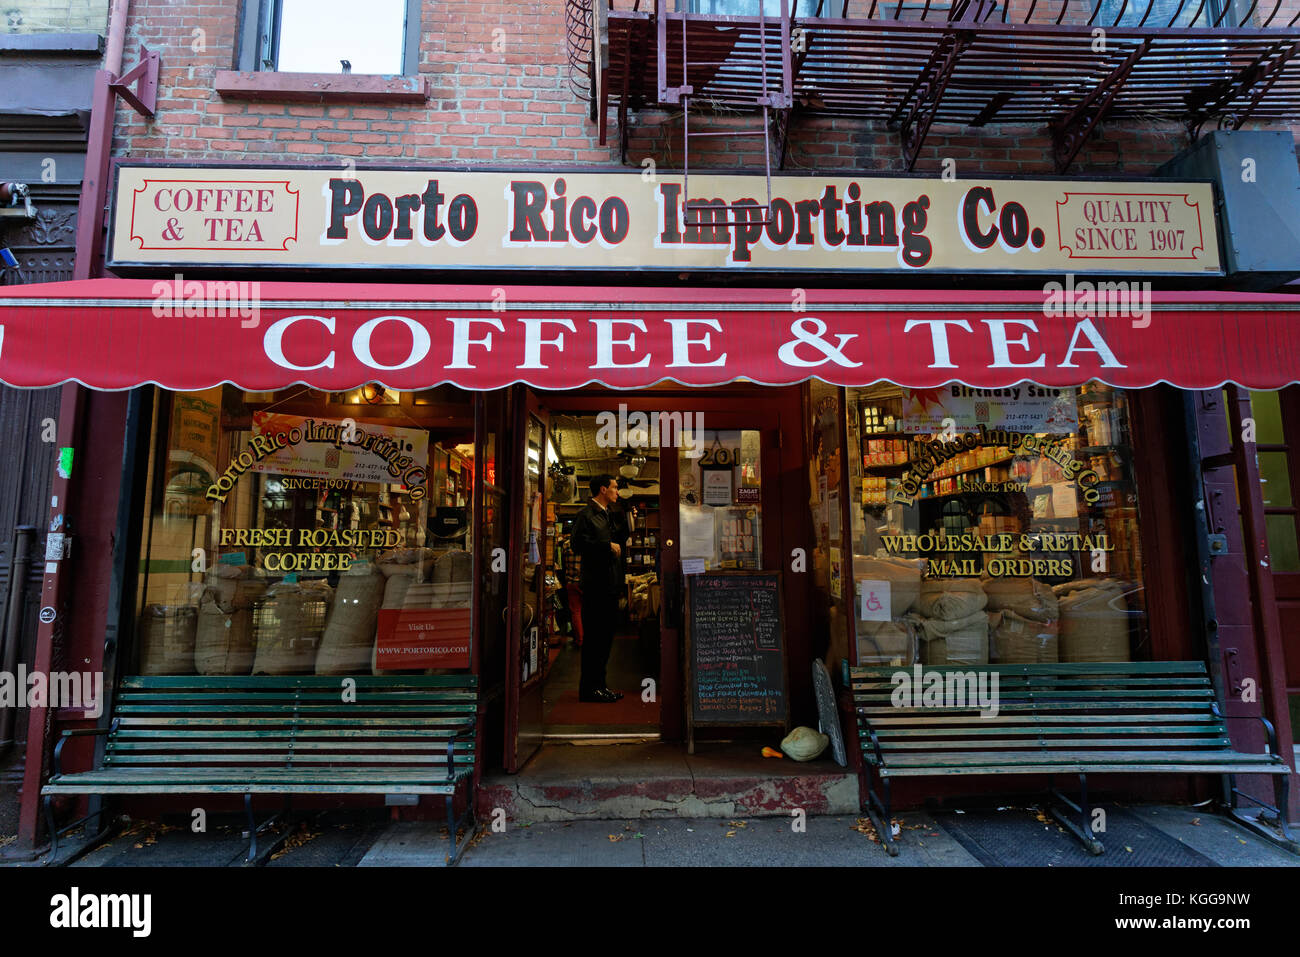 Le Porto Rico Importing Co. magasin a ouvert ses portes en 1907 sur Bleecker Street dans Greenwich Village, Manhattan, la vente de café et thé. Banque D'Images